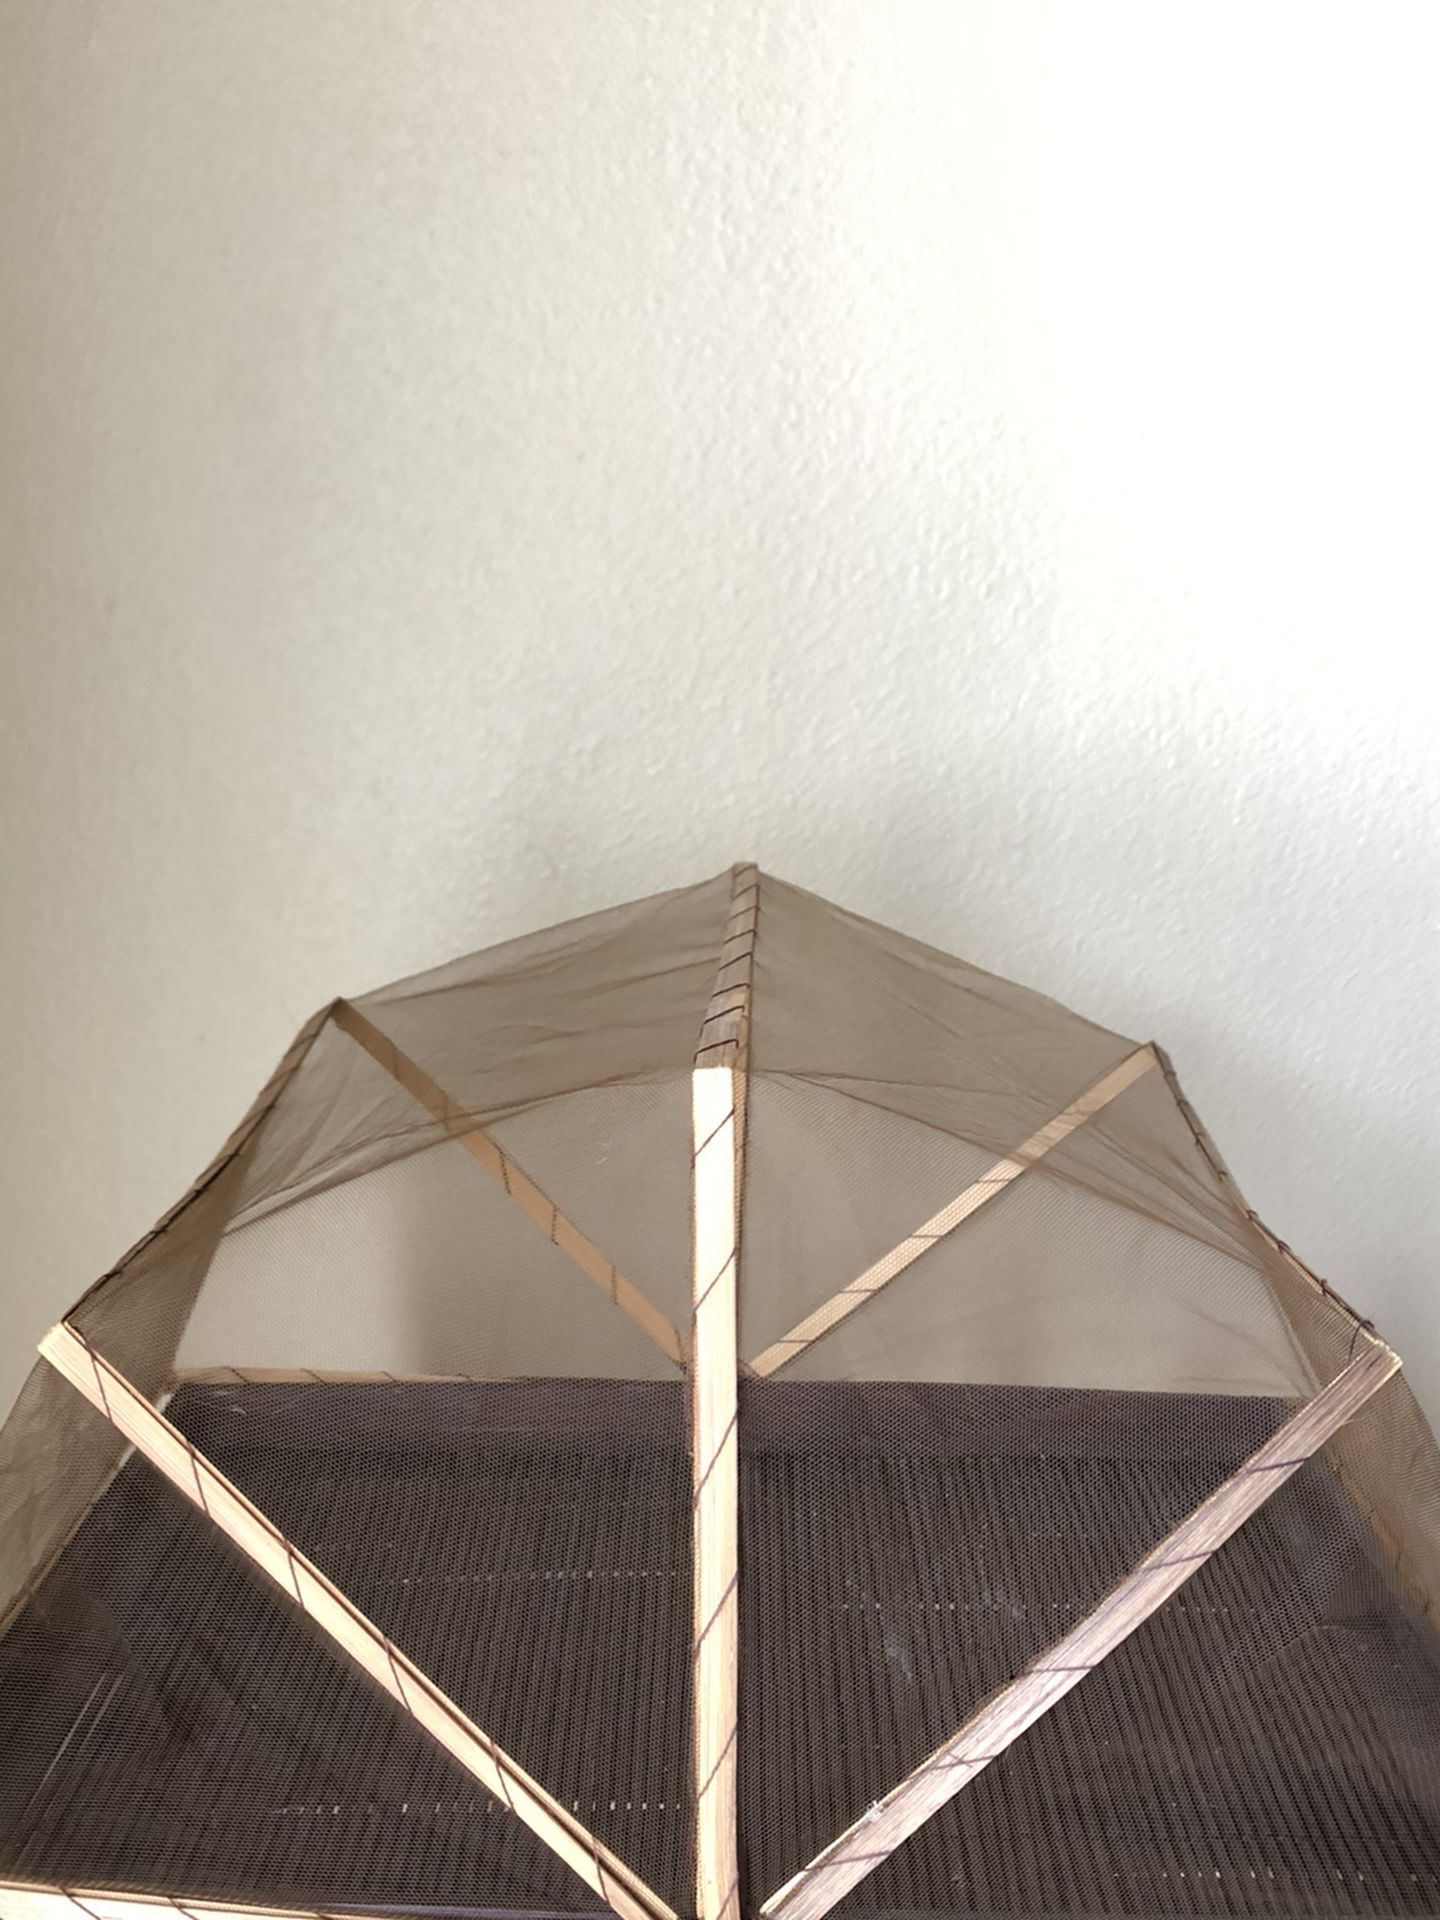 Wicker Tent Basket